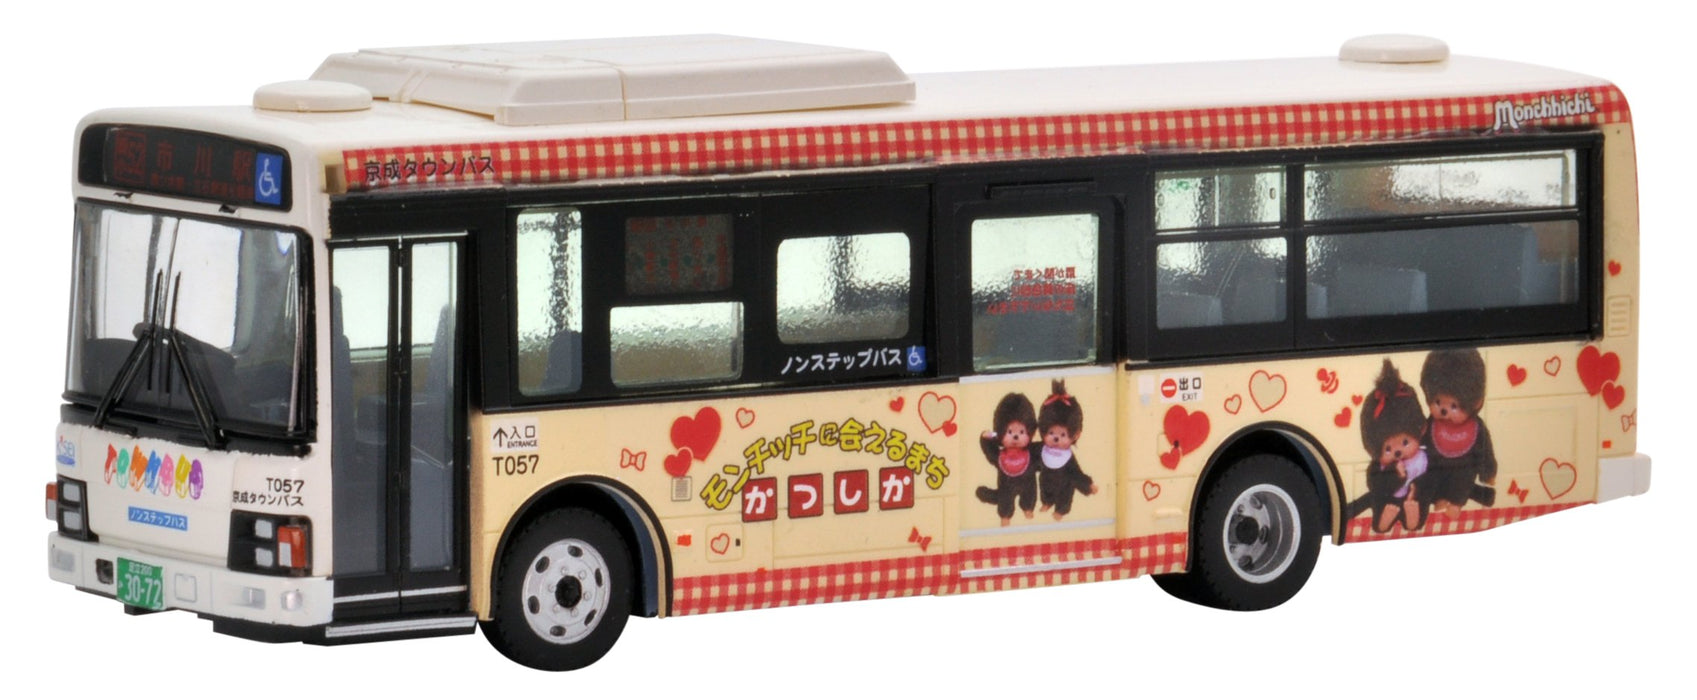 Tomytec National Bus Collection Jh022 1/80 Keisei Town Katsushika Wrapping Bus Photo Edition